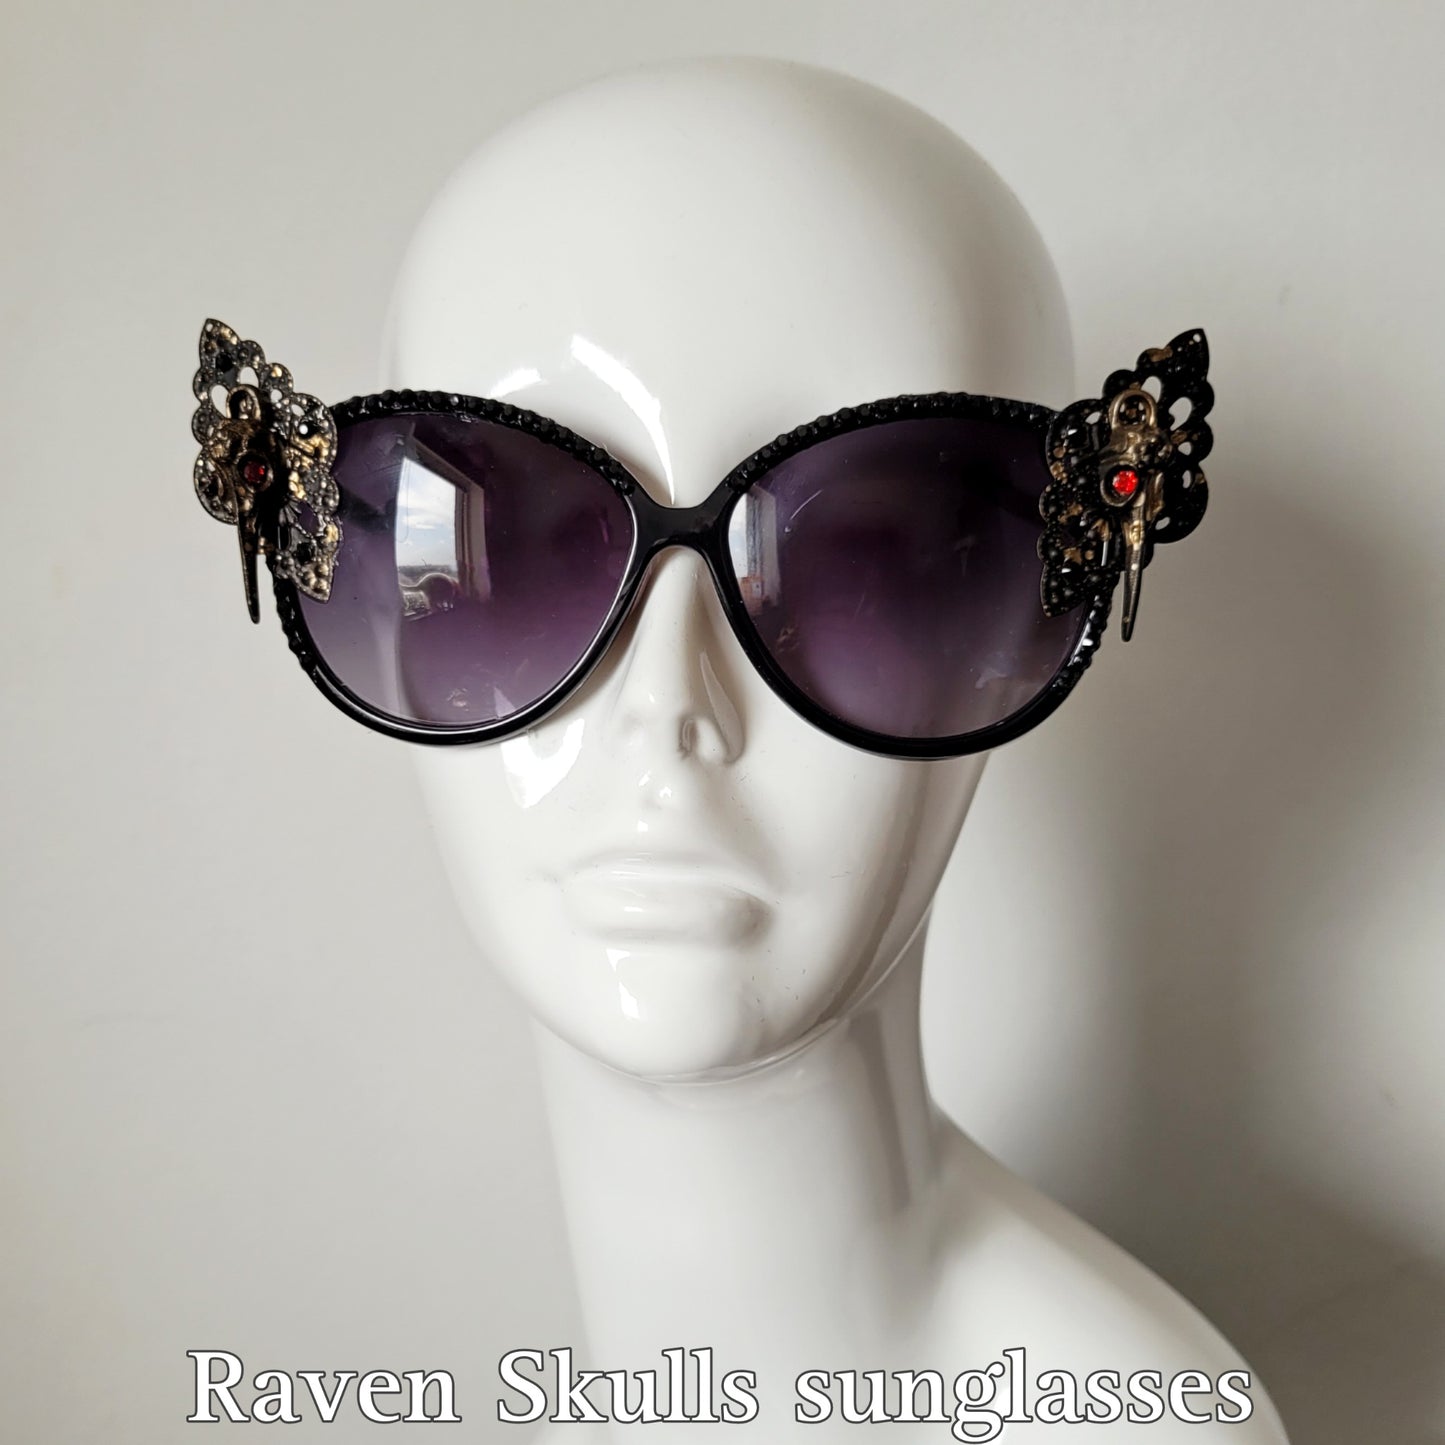 Midnight Garden Collection: The Raven Skulls Sunglasses